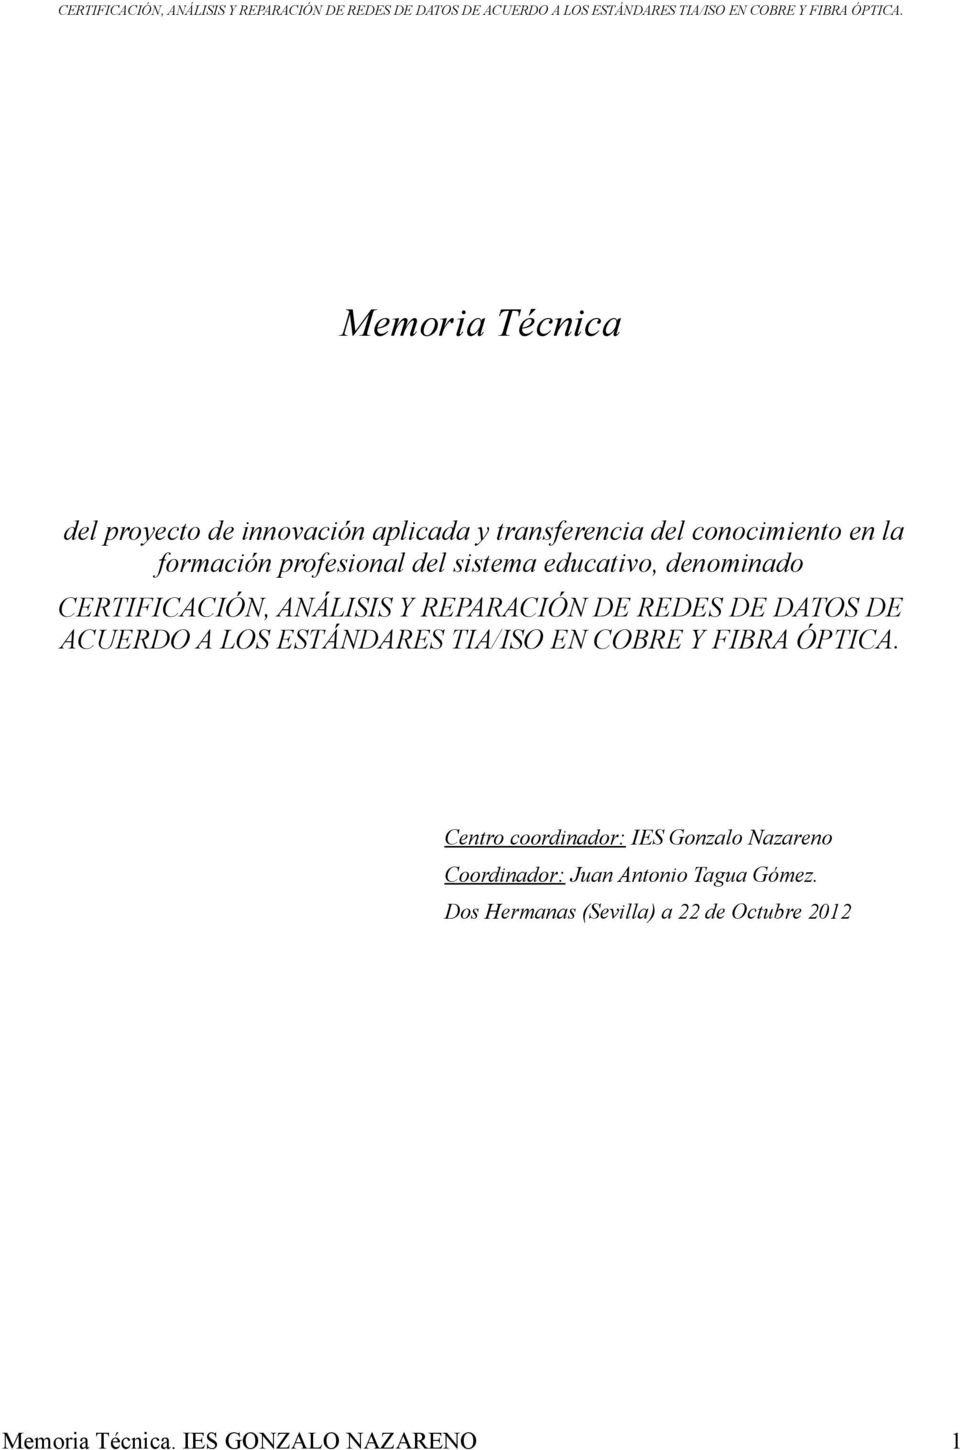 REDES DE DATOS DE ACUERDO A LOS ESTÁNDARES TIA/ISO EN COBRE Y FIBRA ÓPTICA.